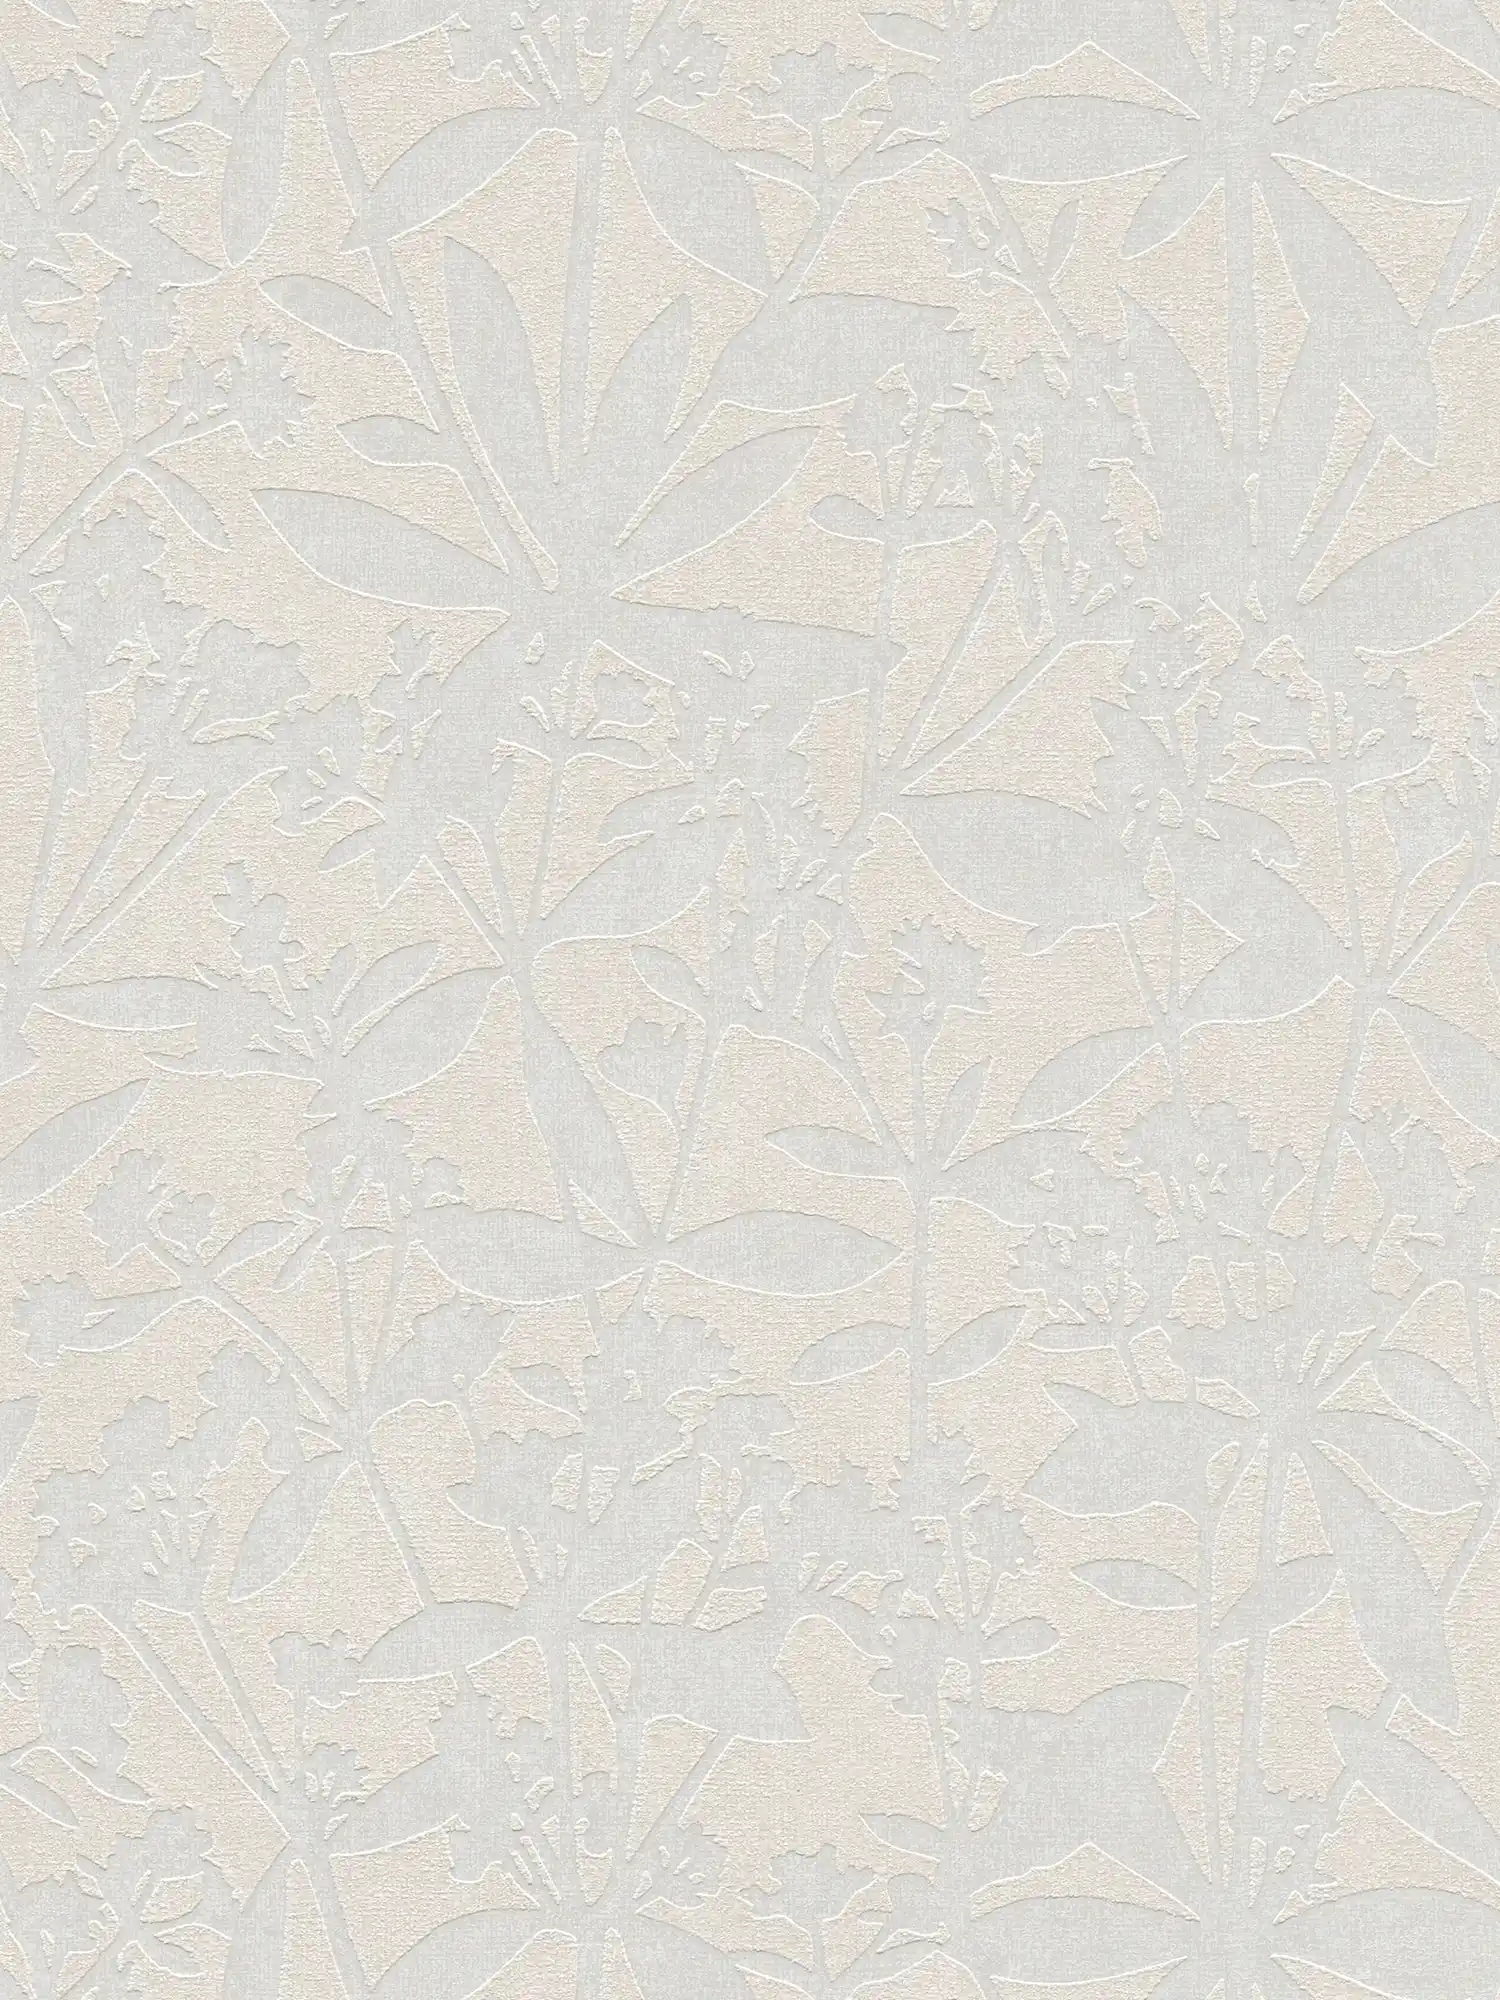 Carta da parati in tessuto non tessuto con motivo floreale - crema, bianco
